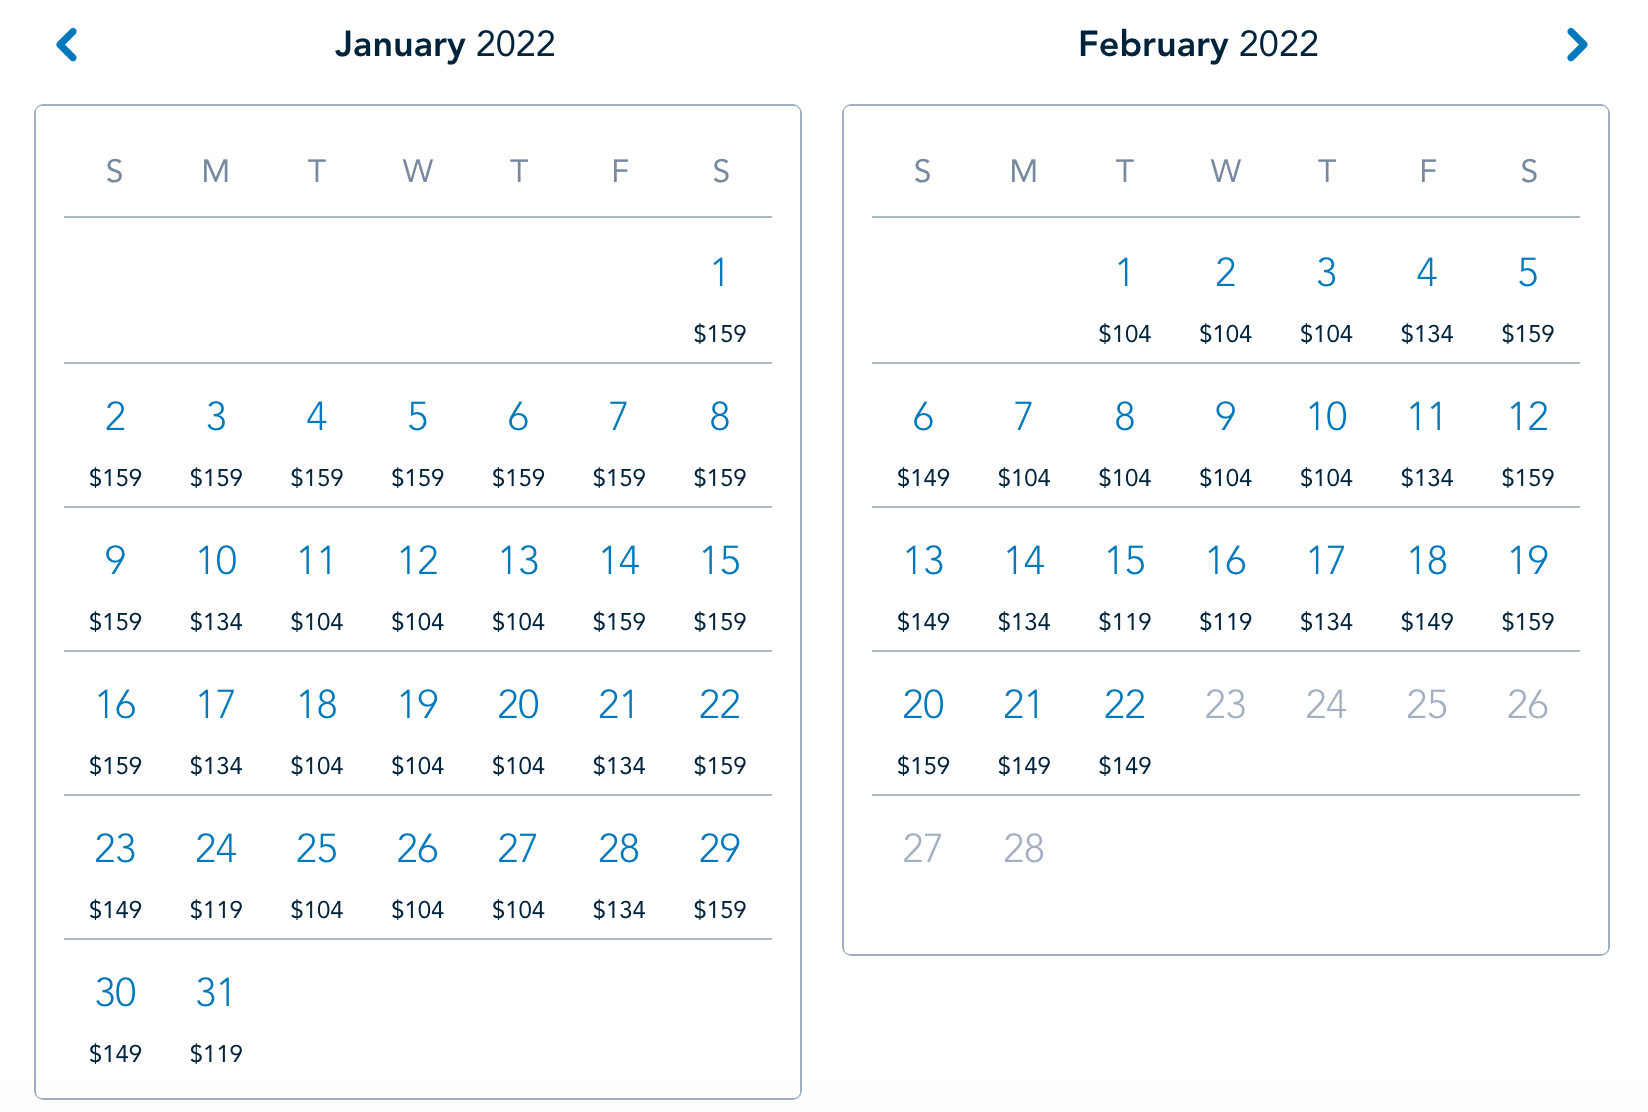 Disneyland 1-daagse ticketprijzen kalender Jan Feb 2022